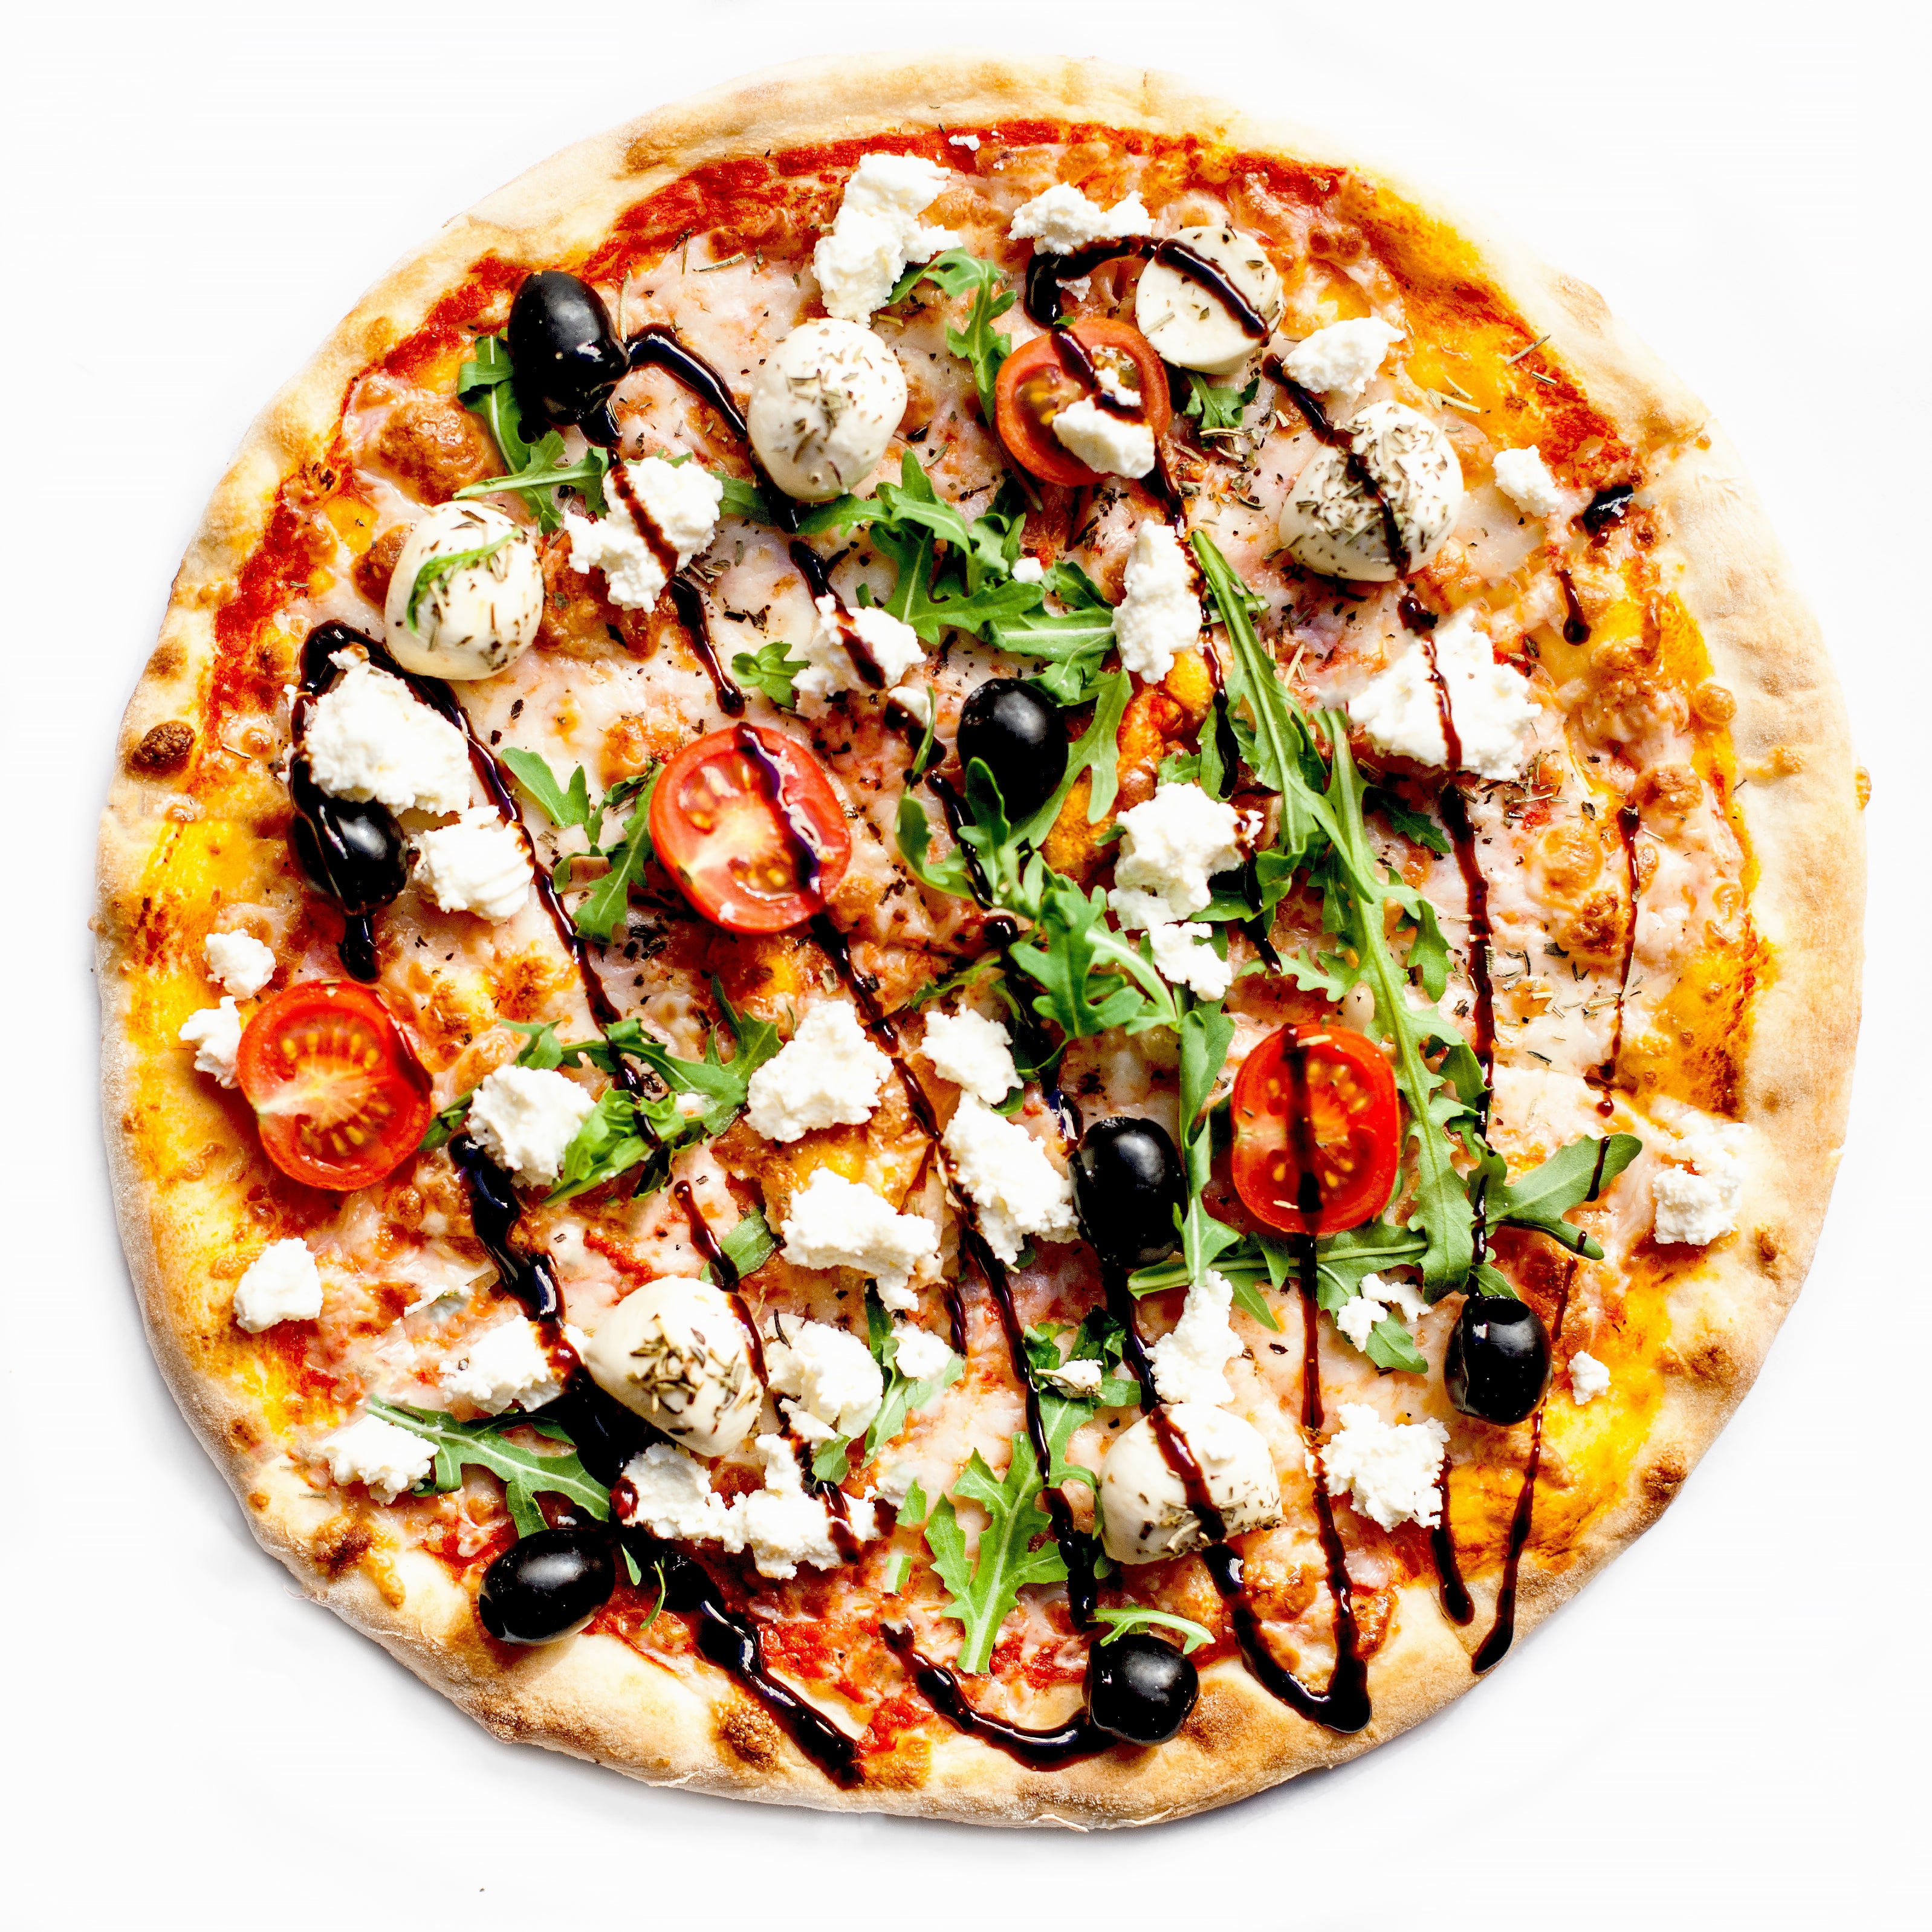 ingfit Keto Pizza Base Mix Gluten Free ingfit UAE